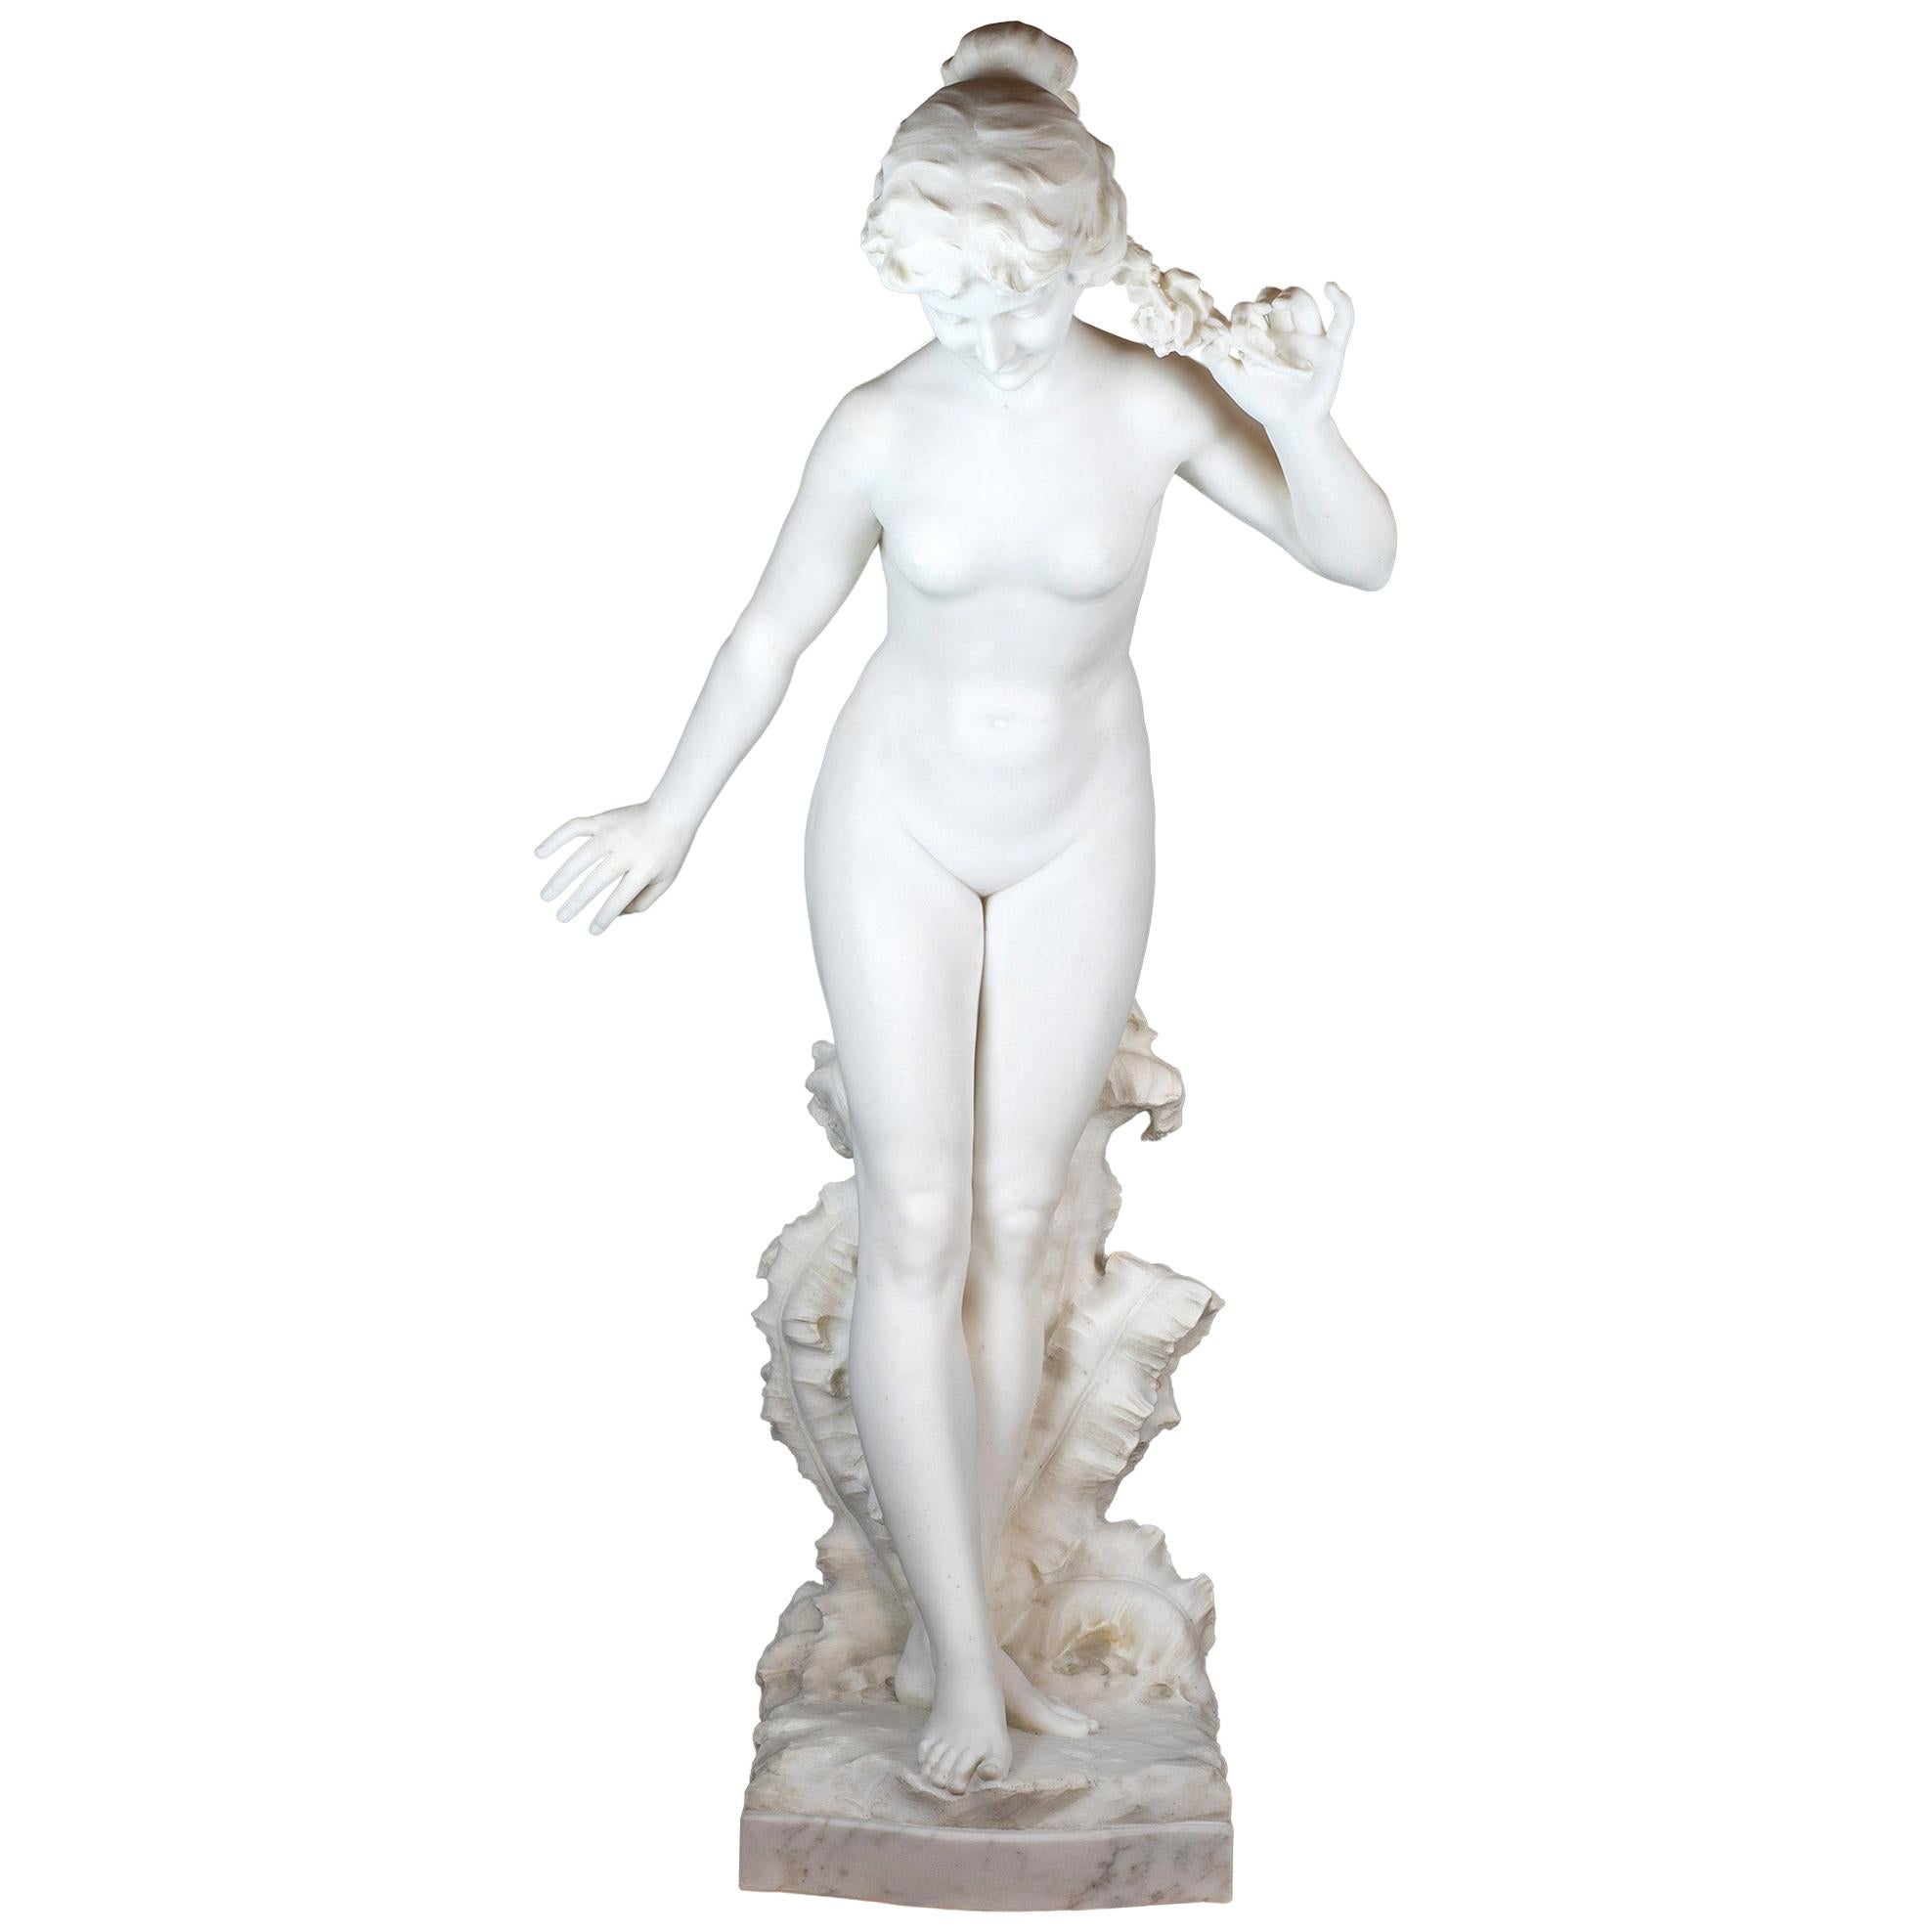 Statue italienne en marbre de Carrare finement sculptée représentant une beauté nue, signée Prof Petrilli/Galleria Bazzanti/Firenze. Vient en paire avec le piédestal en marbre dans la dernière photo. 

Titre : Flora (Allégorie du